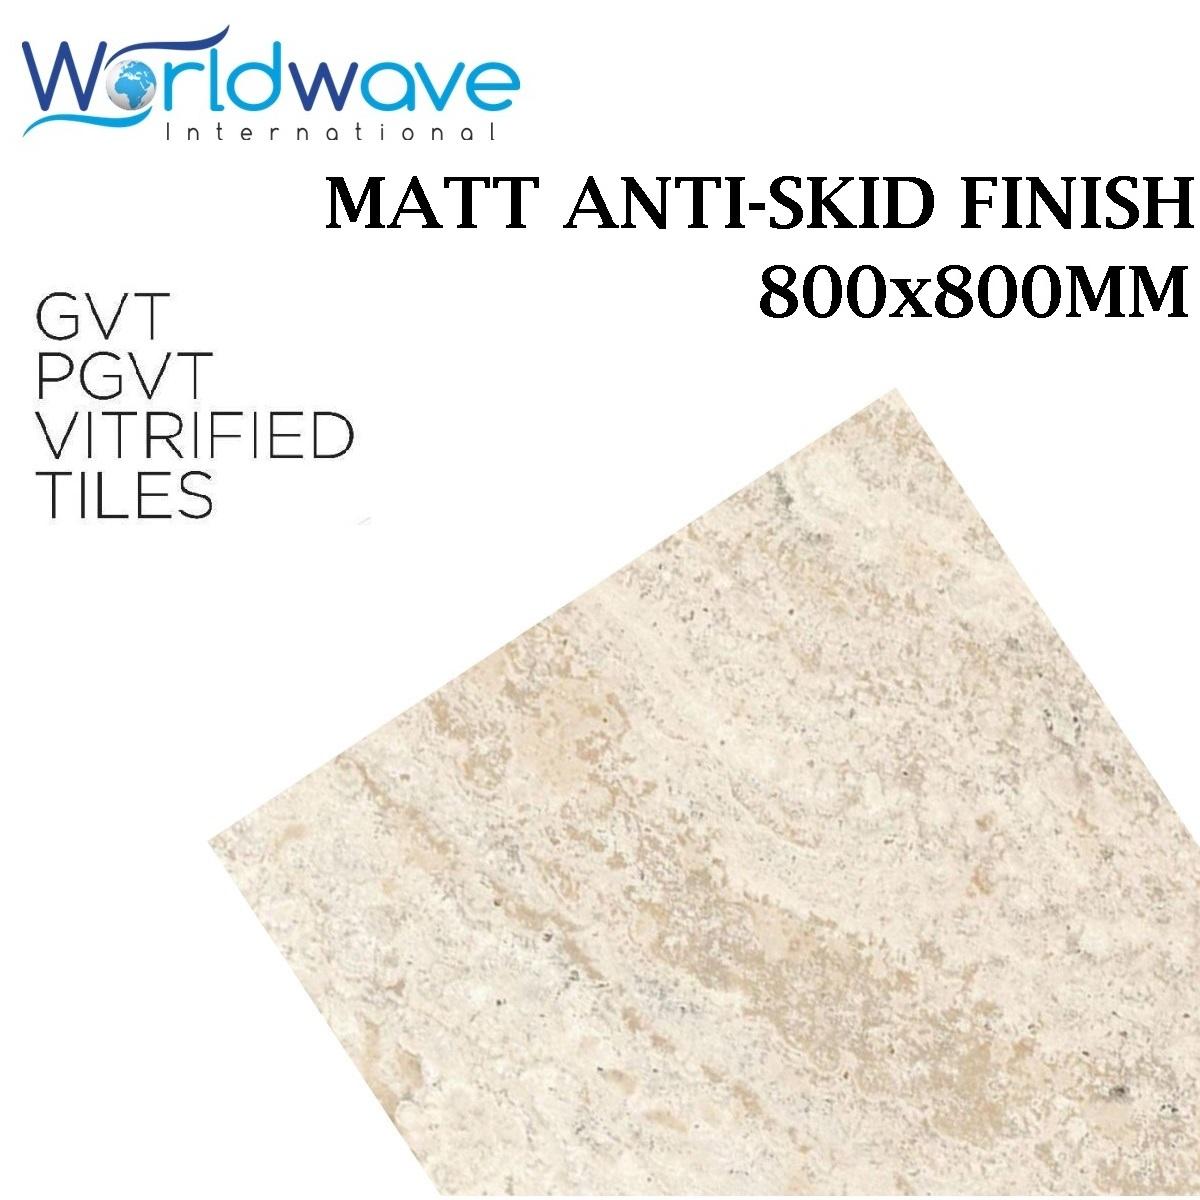 MATT ANTI-SKID SERIES (800X800MM)